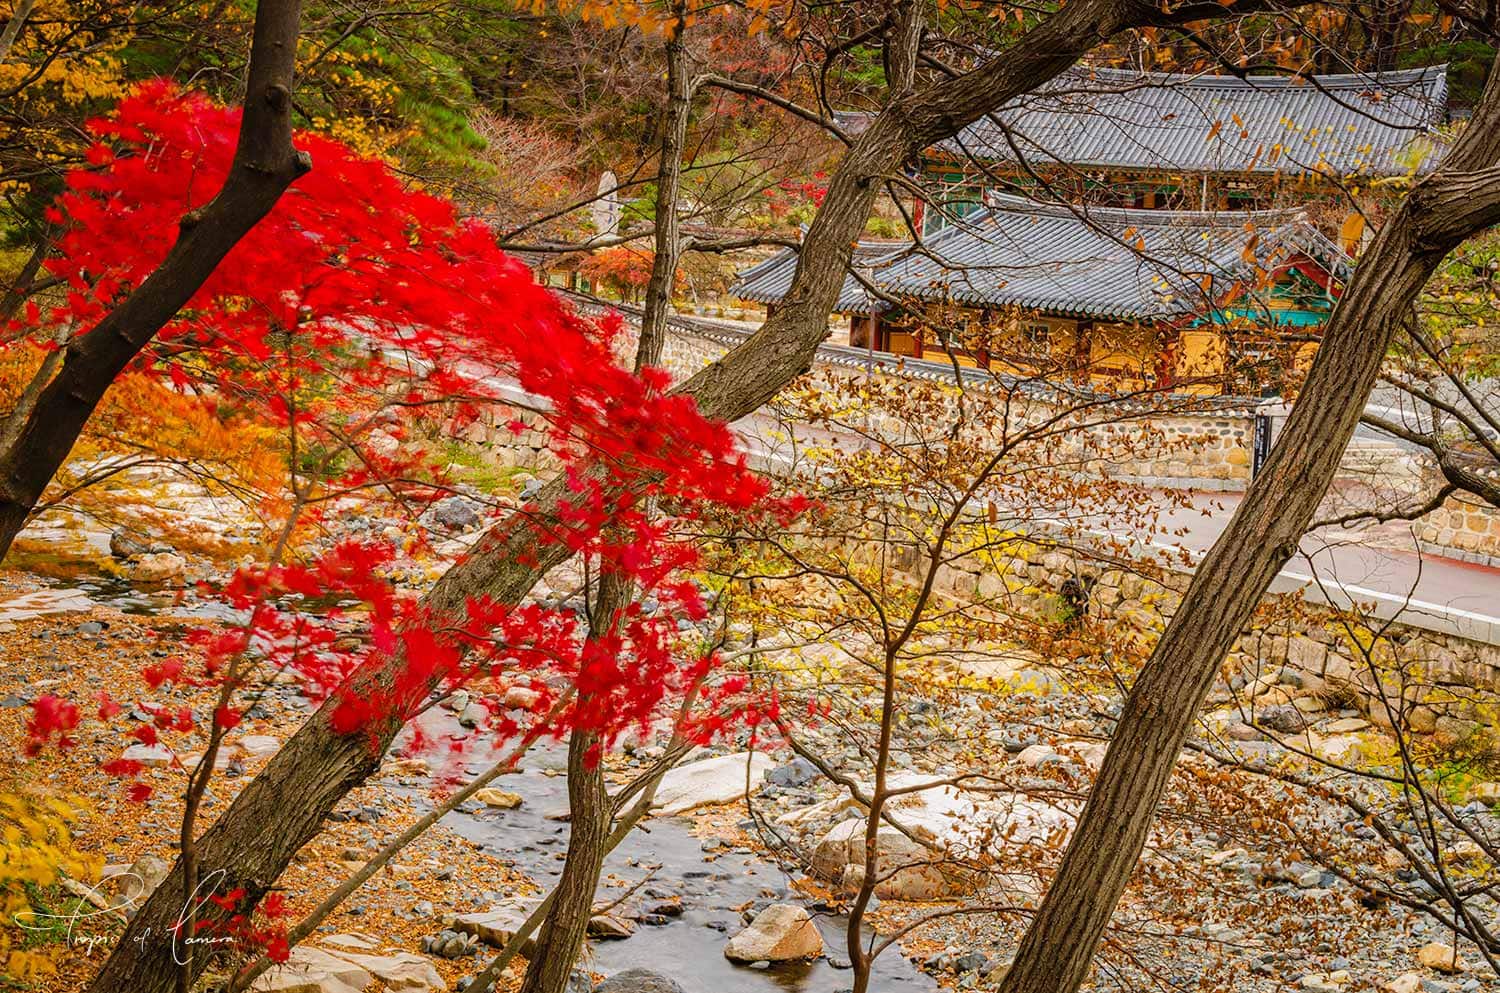 Autumn leaves at Tongdosa Temple, South Korea